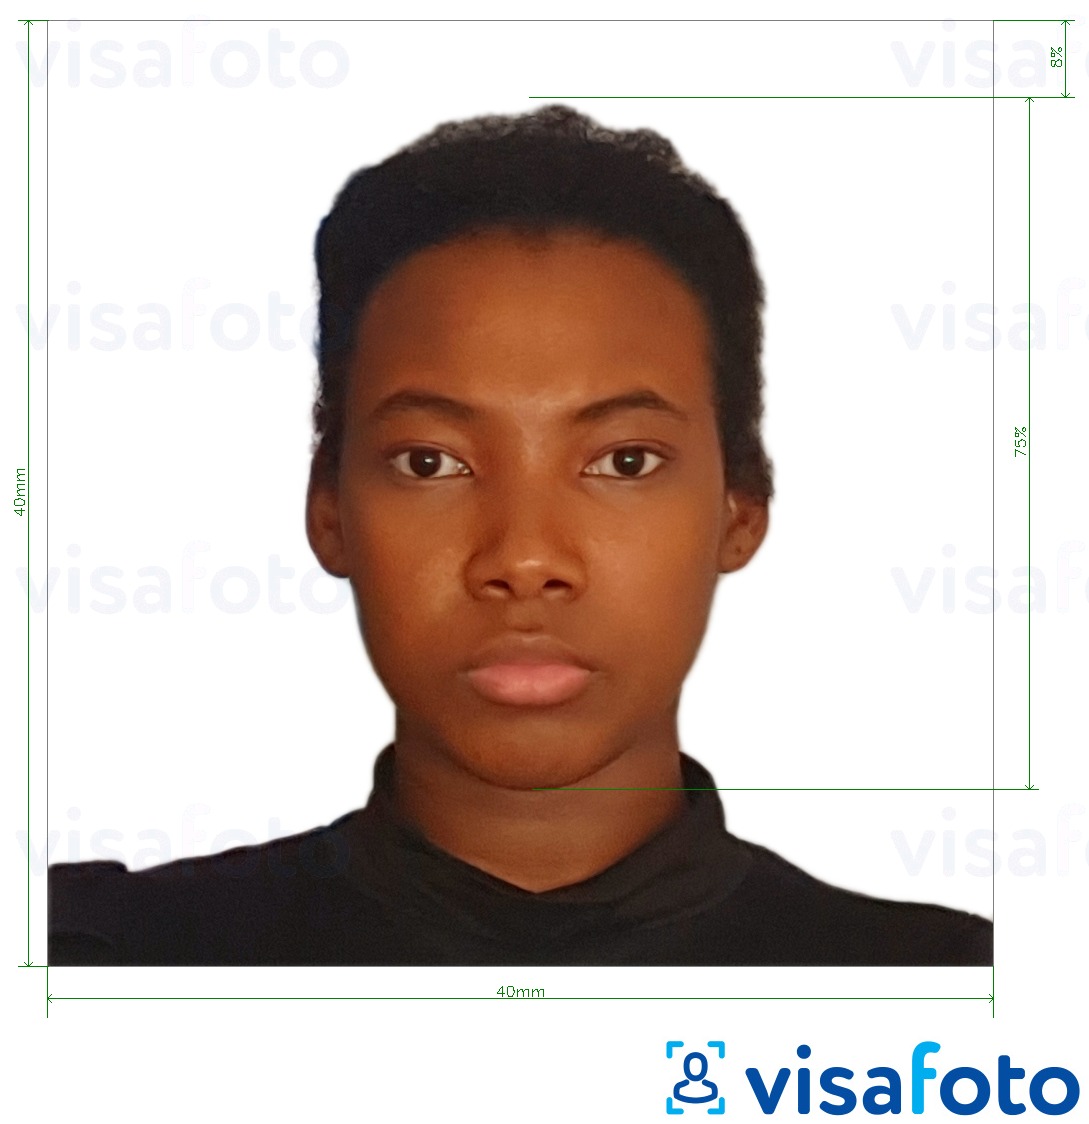 सटीक आकार विनिर्देश के साथ कैमरून पासपोर्ट 4x4 सेमी (40x40 मिमी) के लिए तस्वीर का उदाहरण